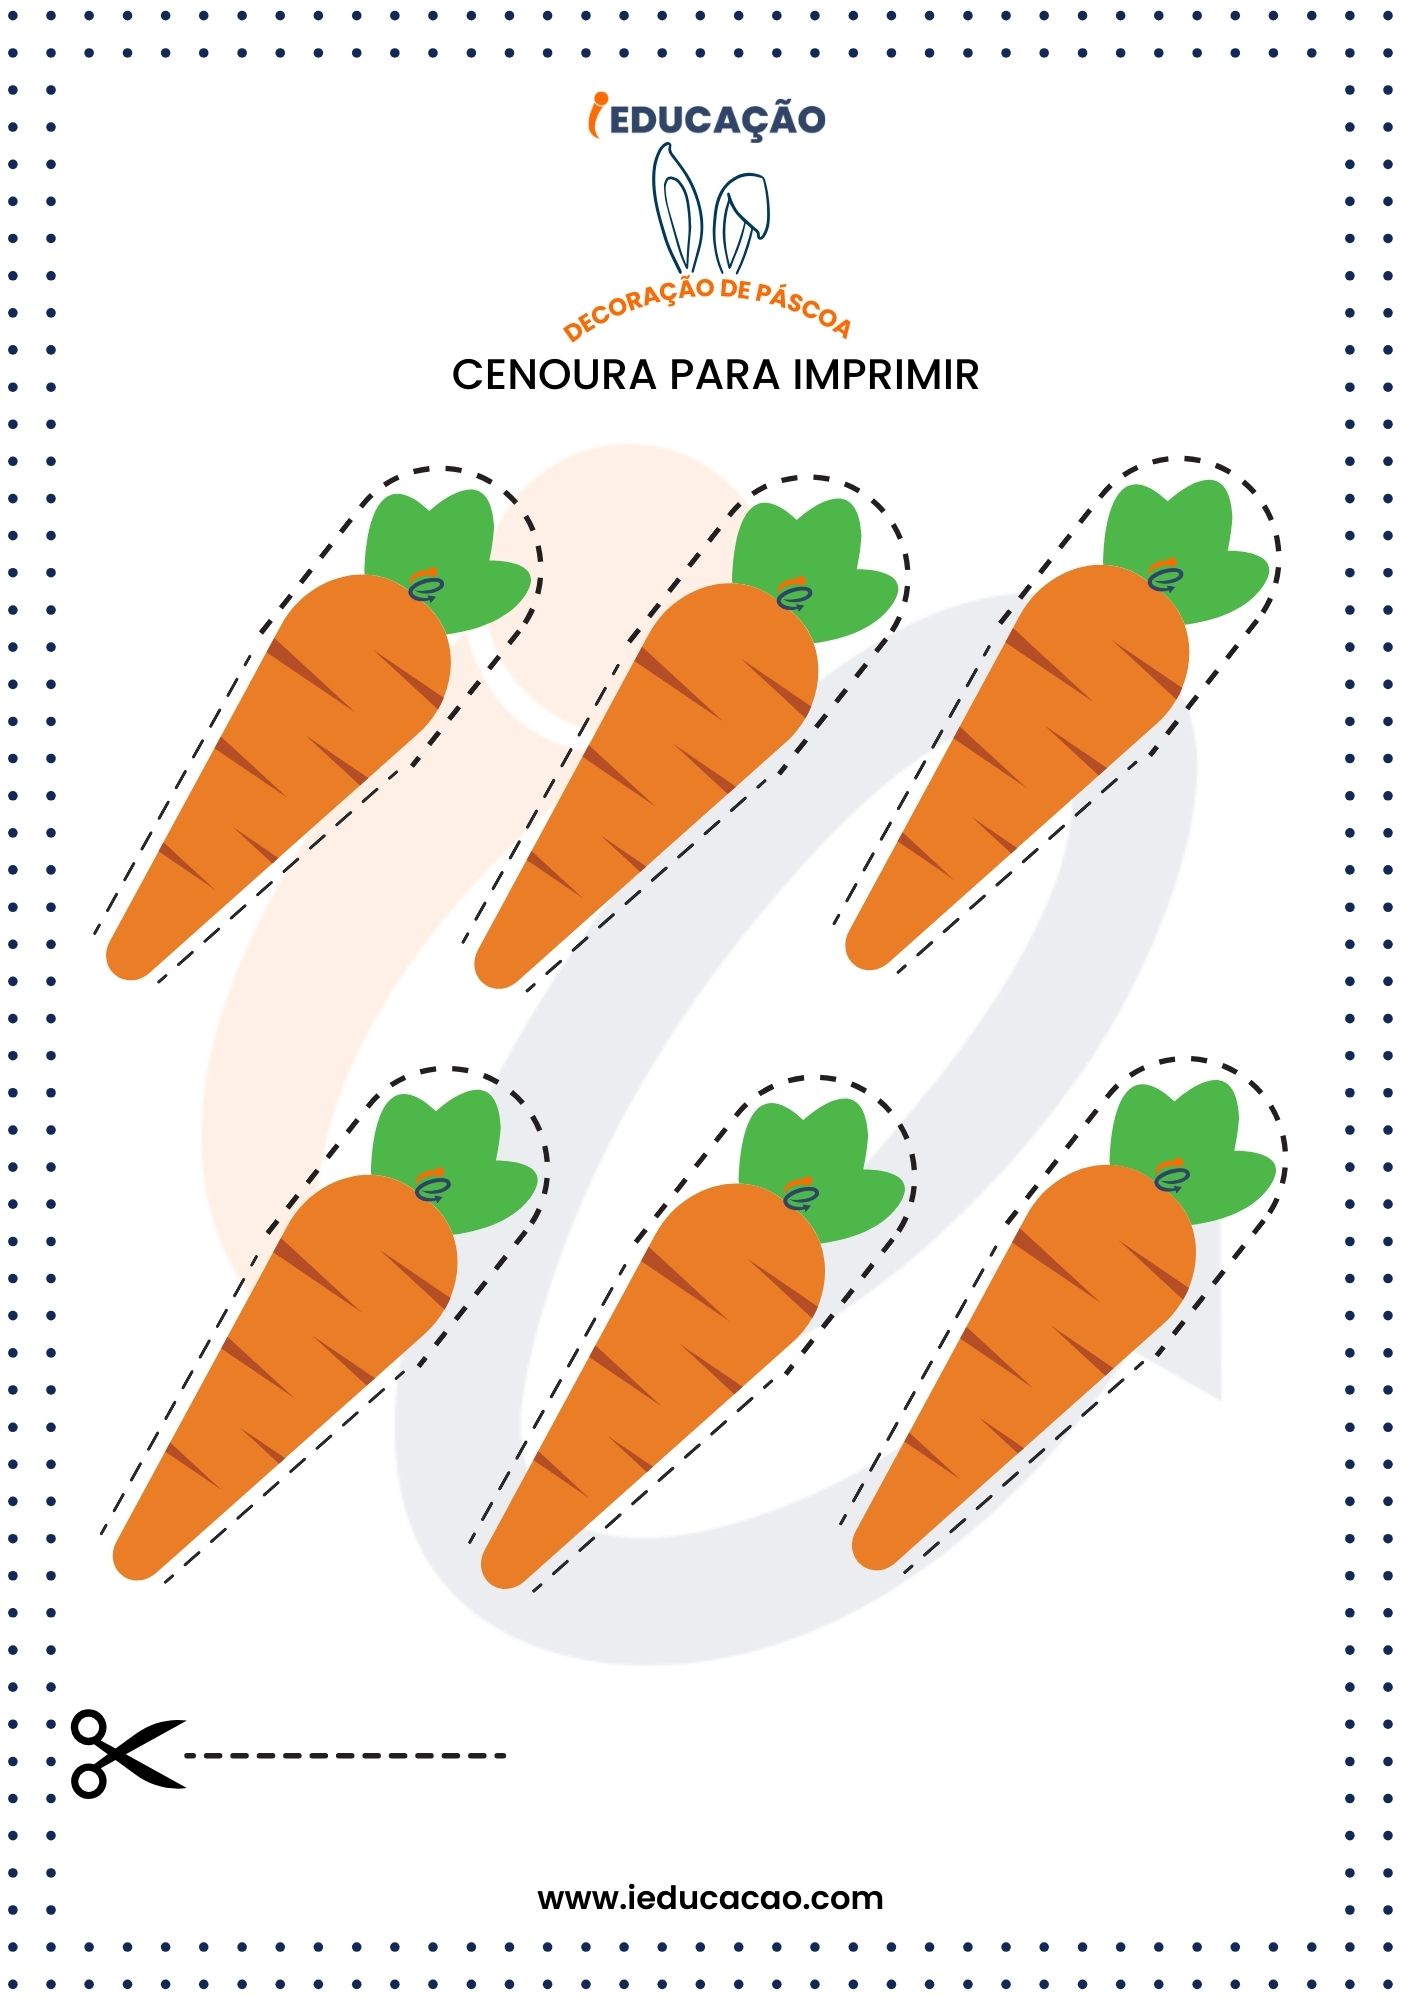 Decoração de Páscoa com cenouras pequenas para imprimir